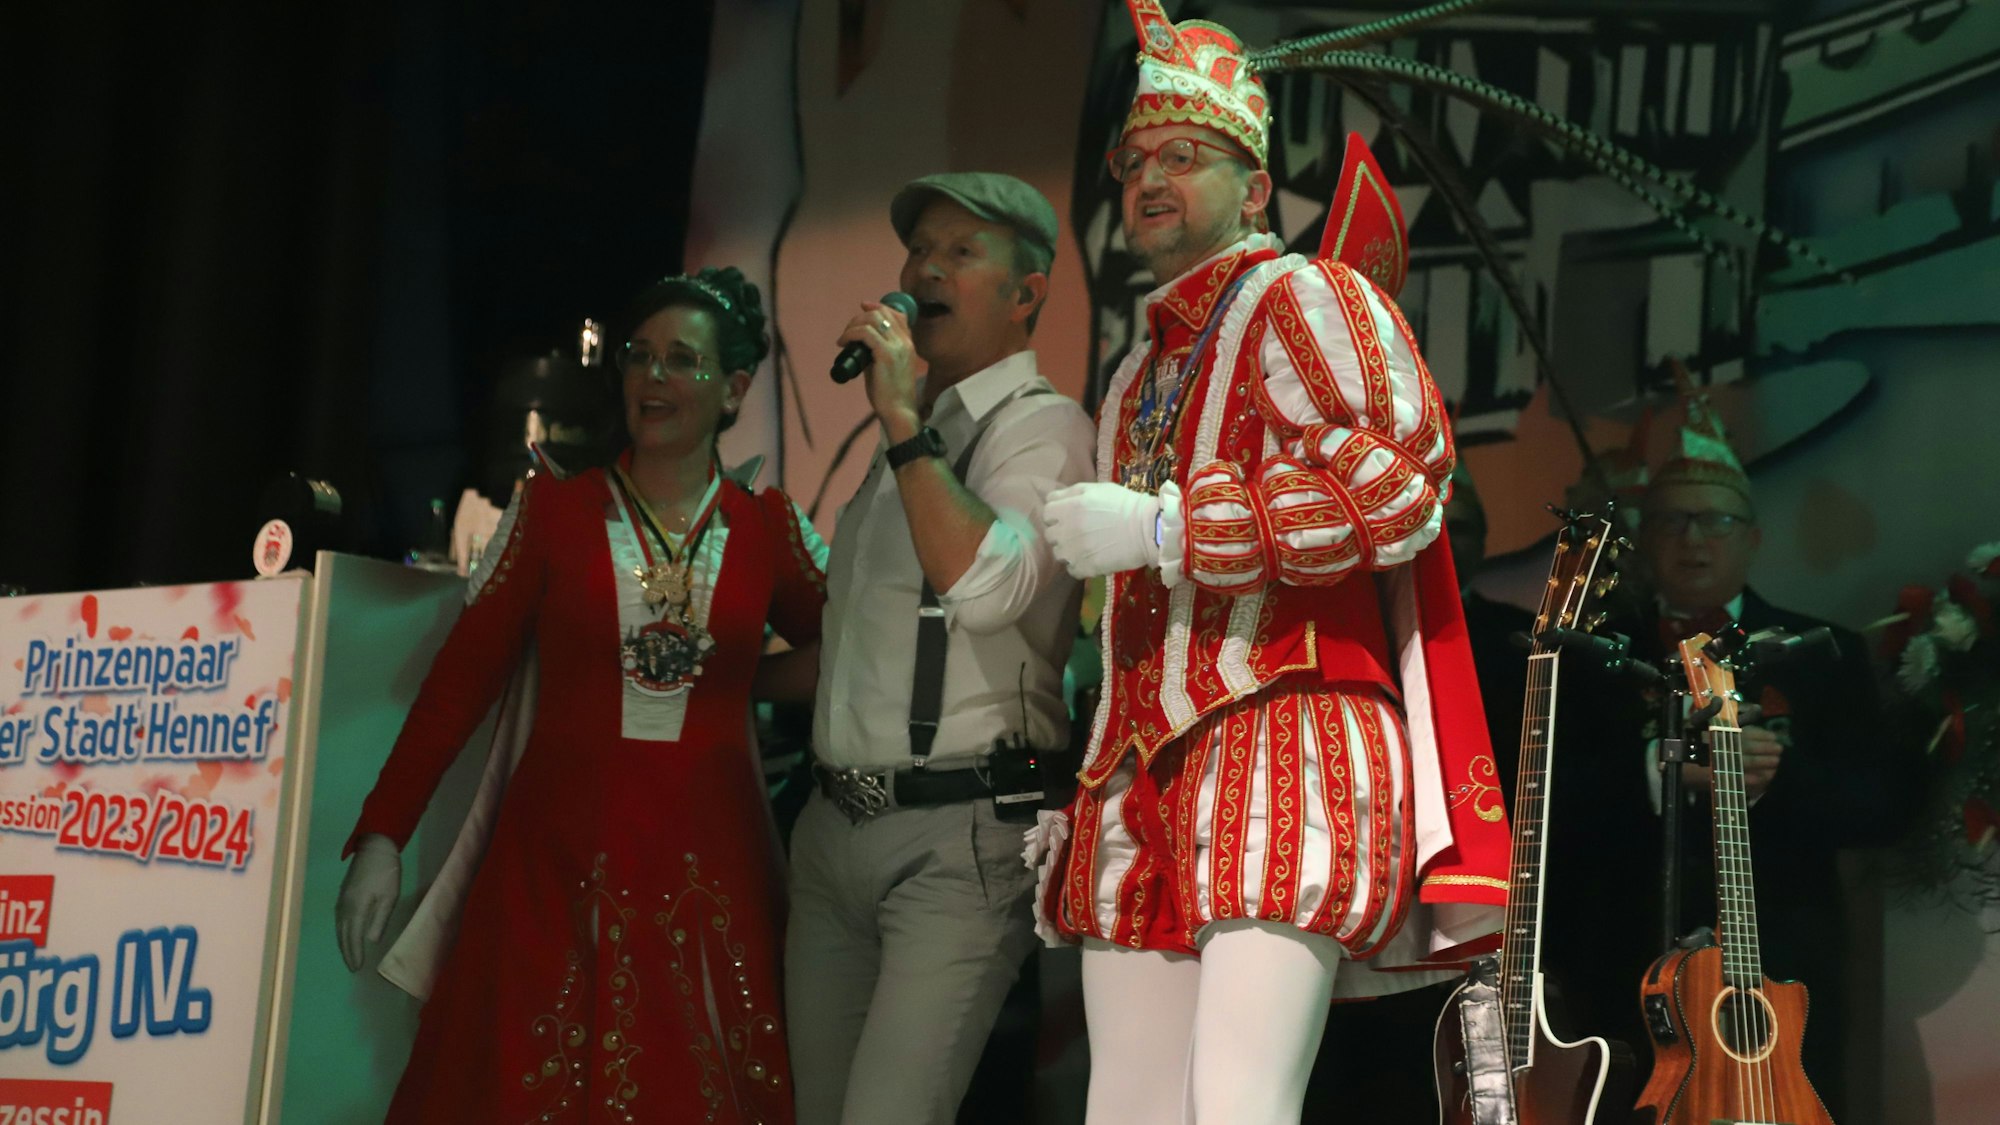 Die 1. Hennefer Karnevalsgesellschaft, die das Prinzenpaar stellt, hatte für die Kostüm- und Prunksitzung ein großartiges Prgramm zusammengestellt. Prinz Jörg IV. mit Prinzessin Kathrin I. und dem Frontmann der "Klüngelköpp", Frank Reudenbach.